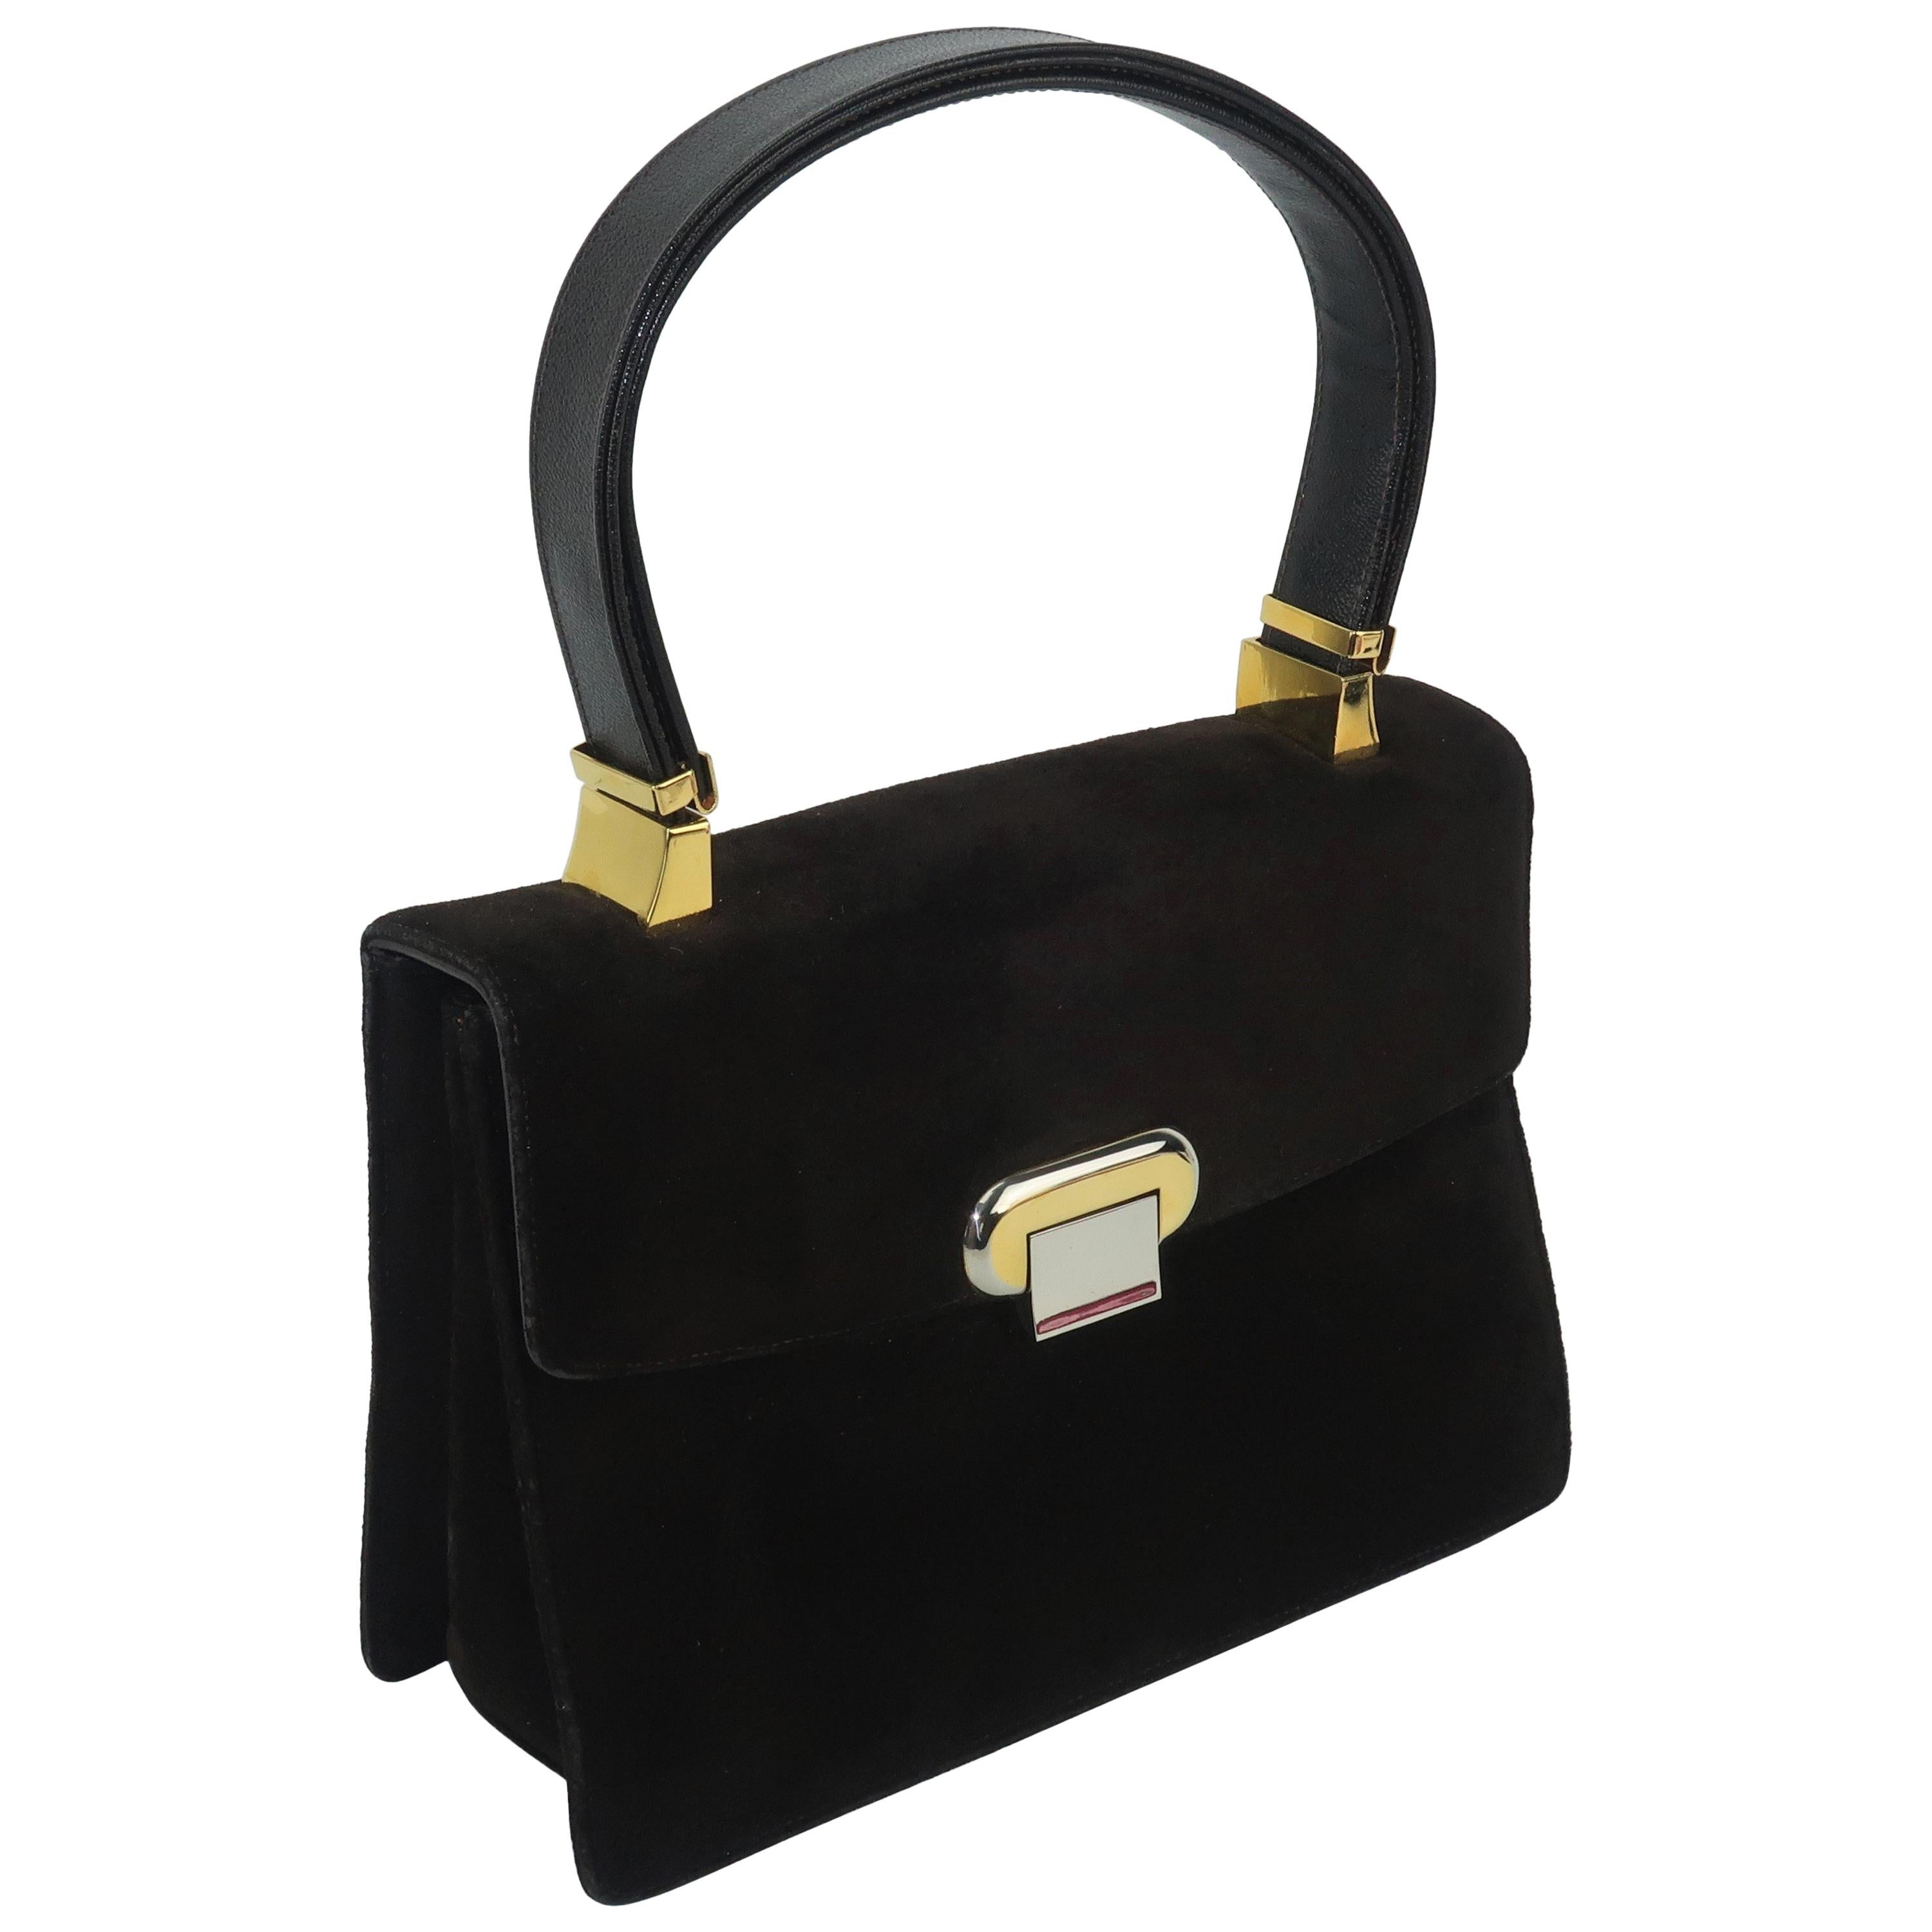 Koret Dark Brown Suede Handbag with Convertible Handle / Unique Closure, 1960s 